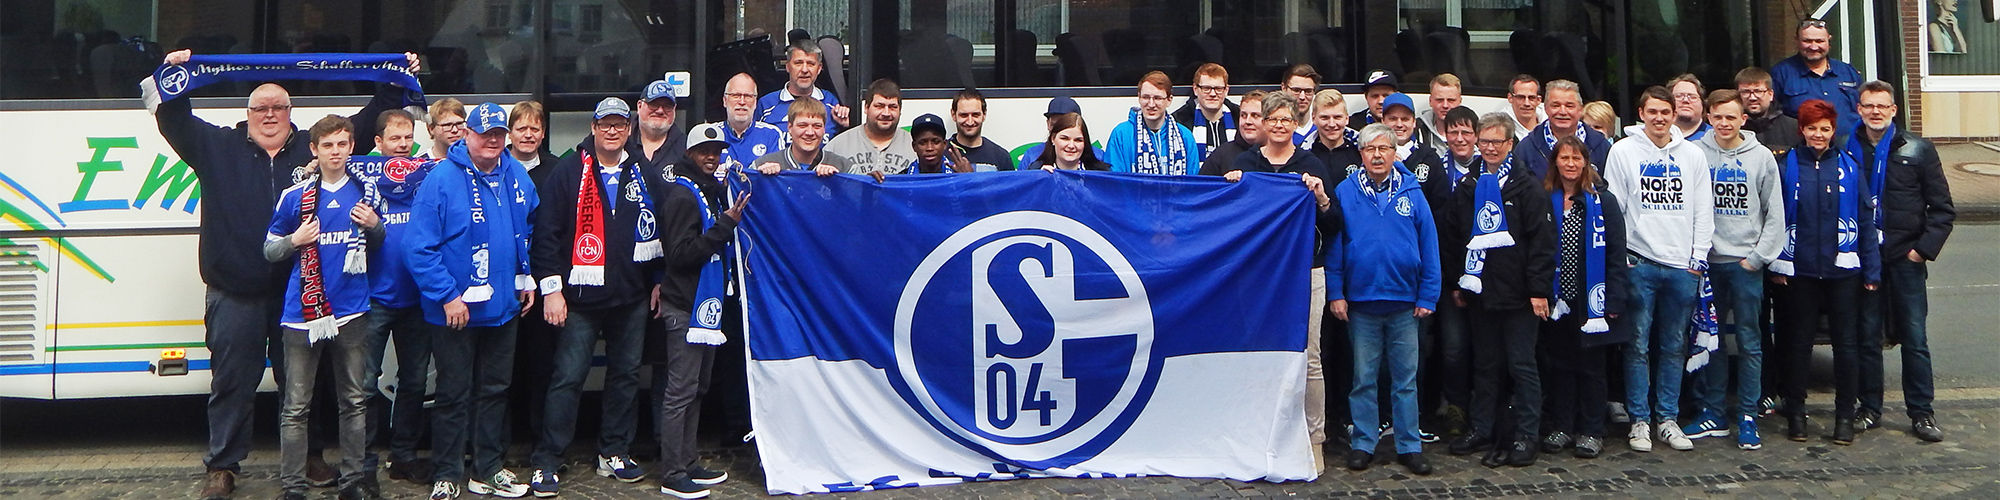 Blaue Biber Bevergern - Der Schalke Fanclub